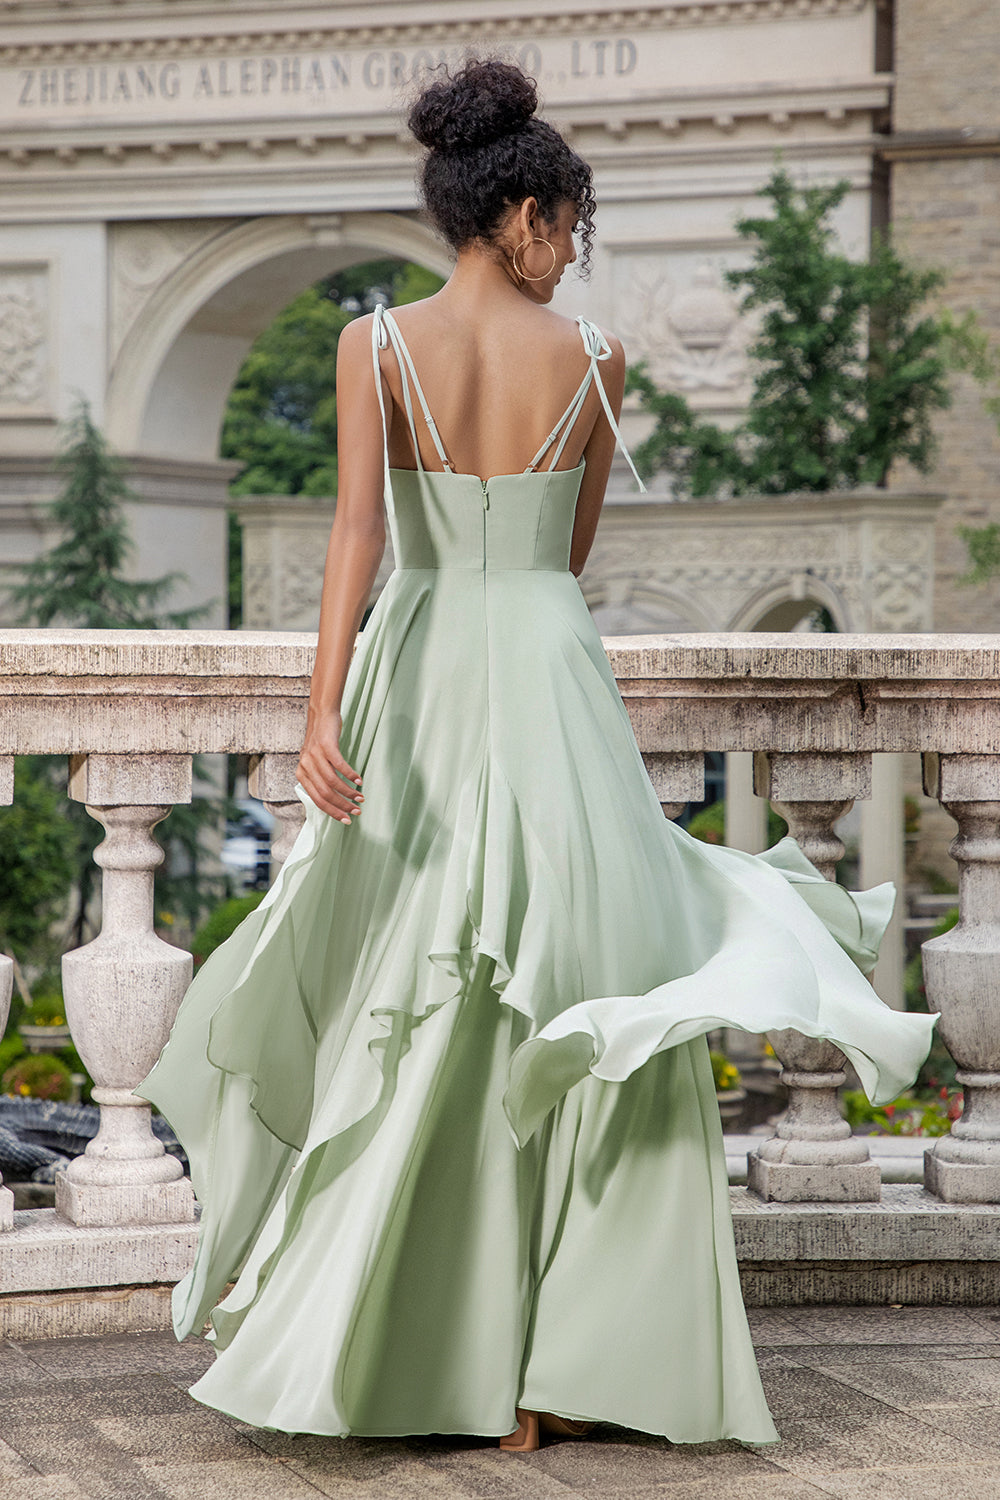 Matcha Corset A-Line Chiffon Bridesmaid Dress with Lace Up